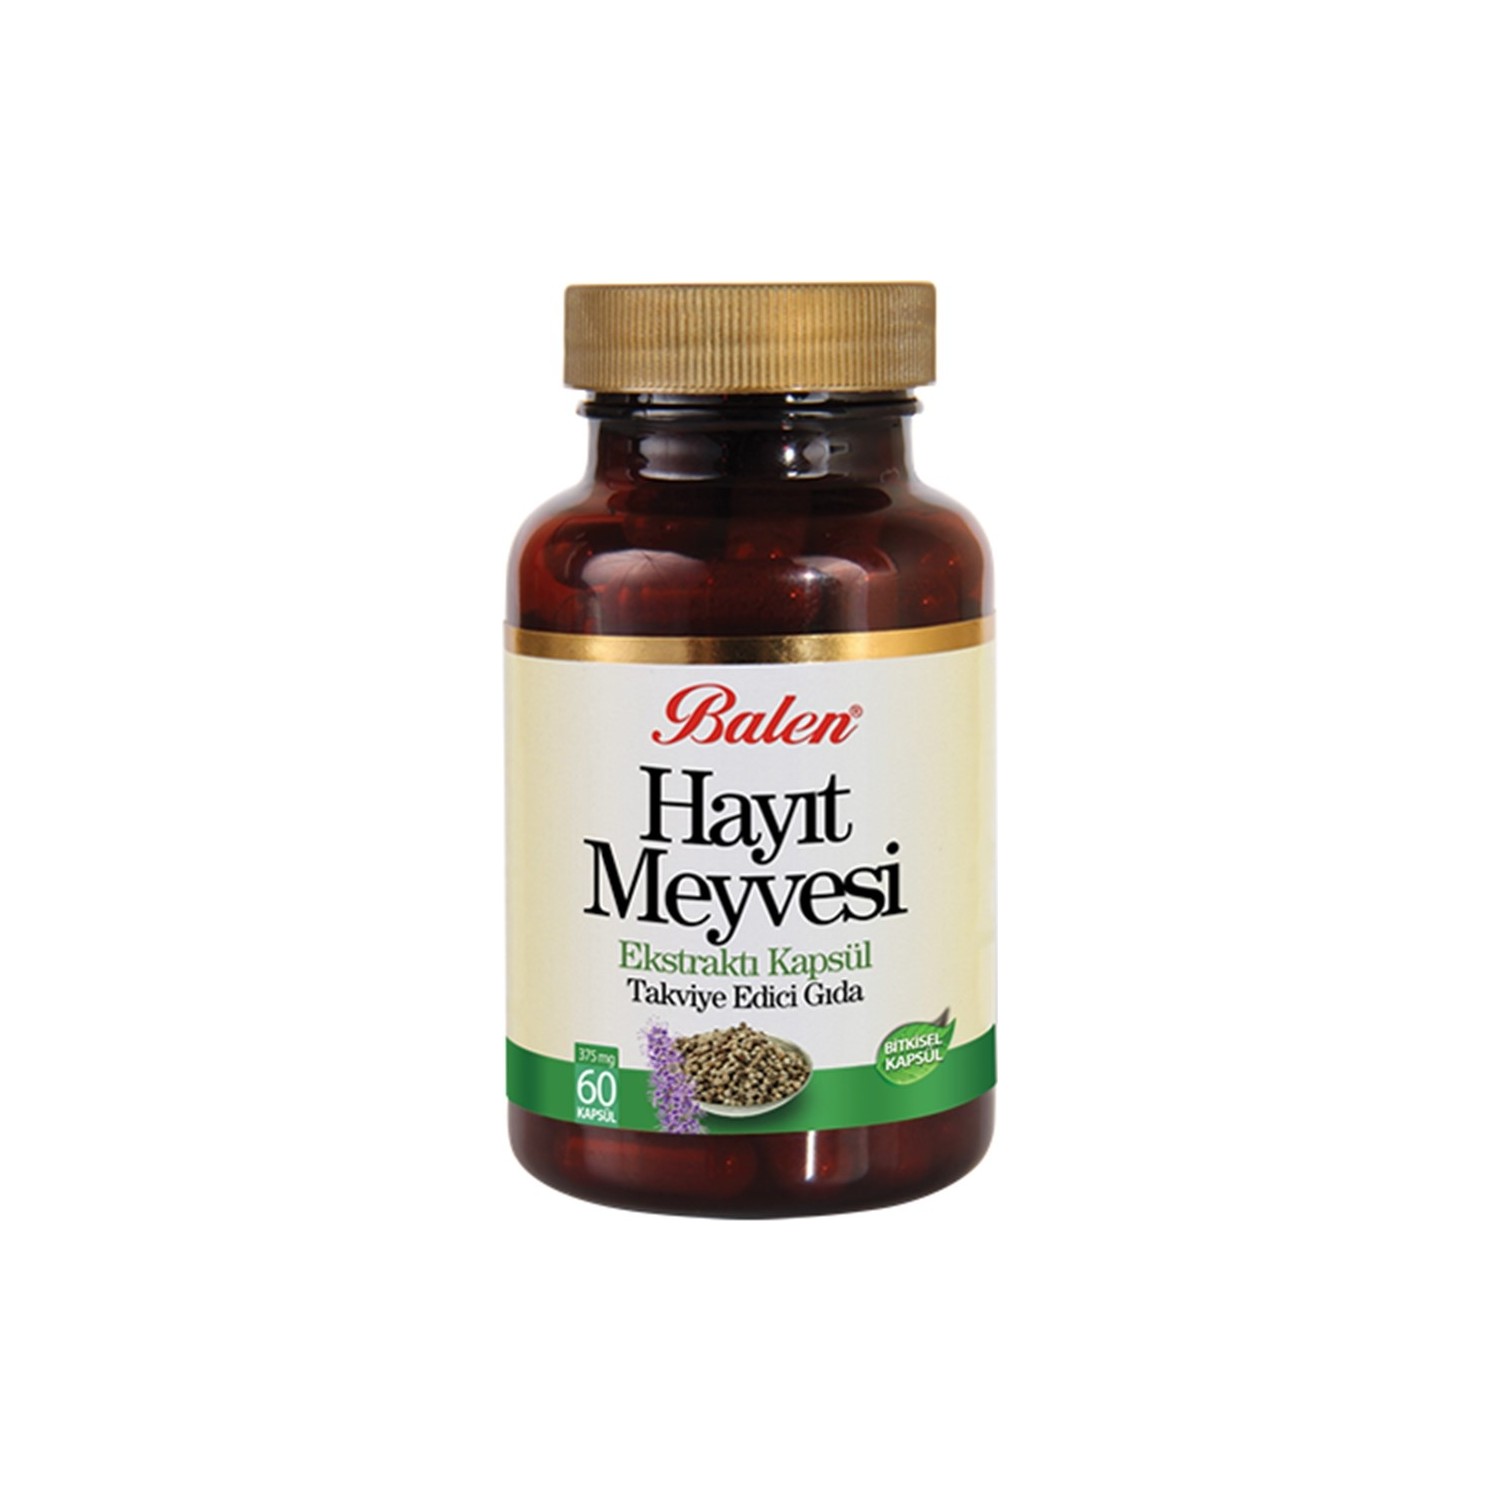 Экстракт фруктов Balen Hayit, 60 капсул, 375 мг экстракт фруктов balen hayit 60 капсул 2 штуки